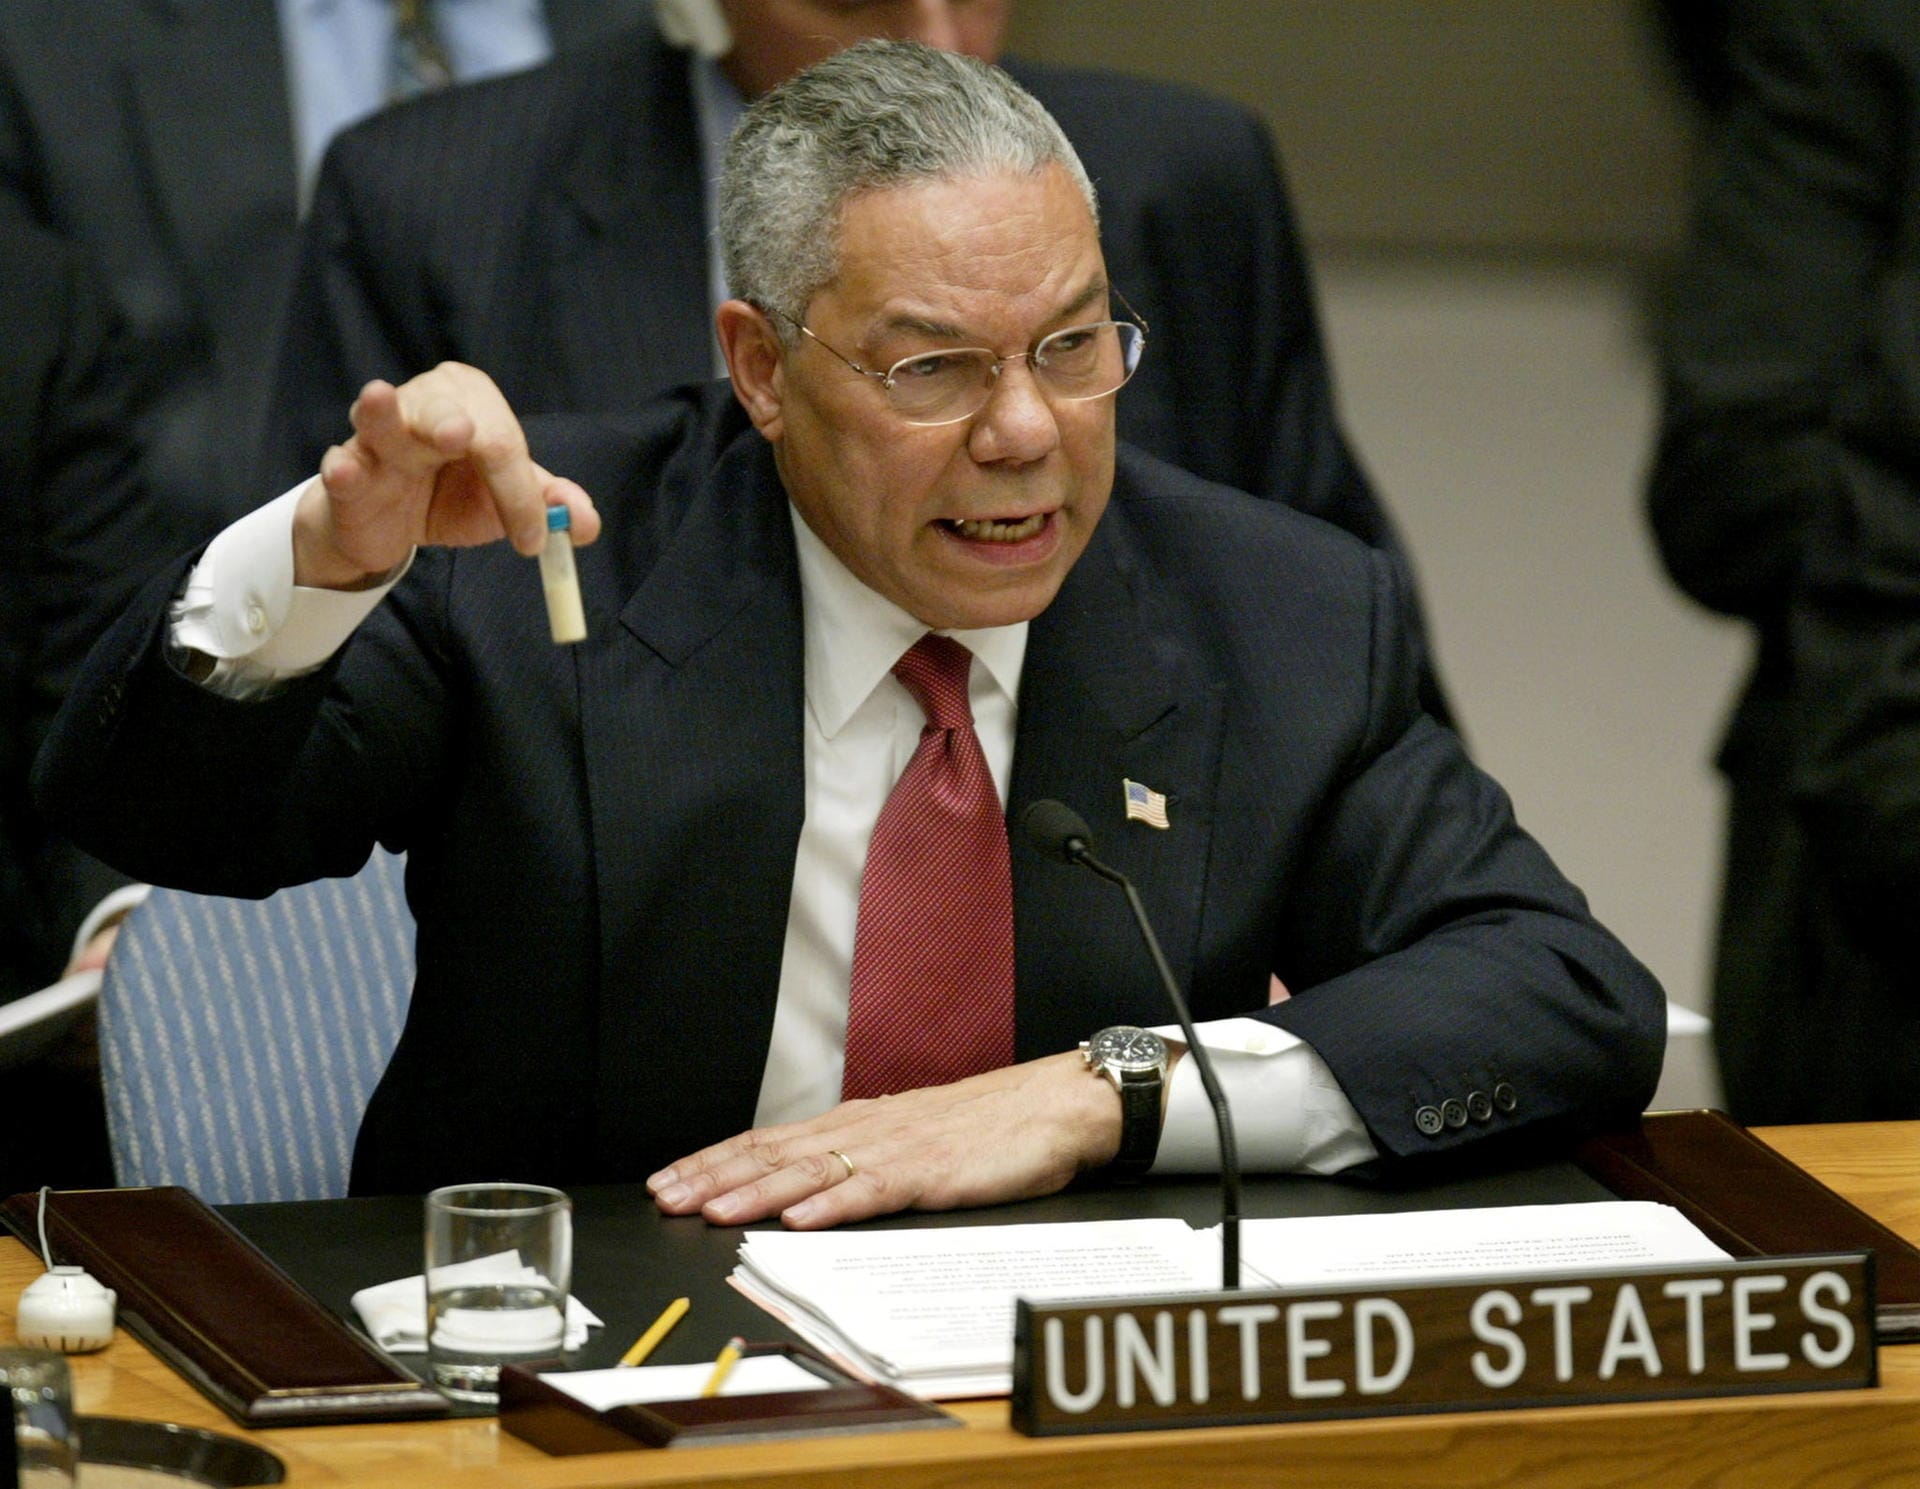 Powell im Februar 2003 vor dem UN-Sicherheitsrat: Mit gefälschten Beweisen argumentierte er damals für eine US-geführte Invasion im Irak.